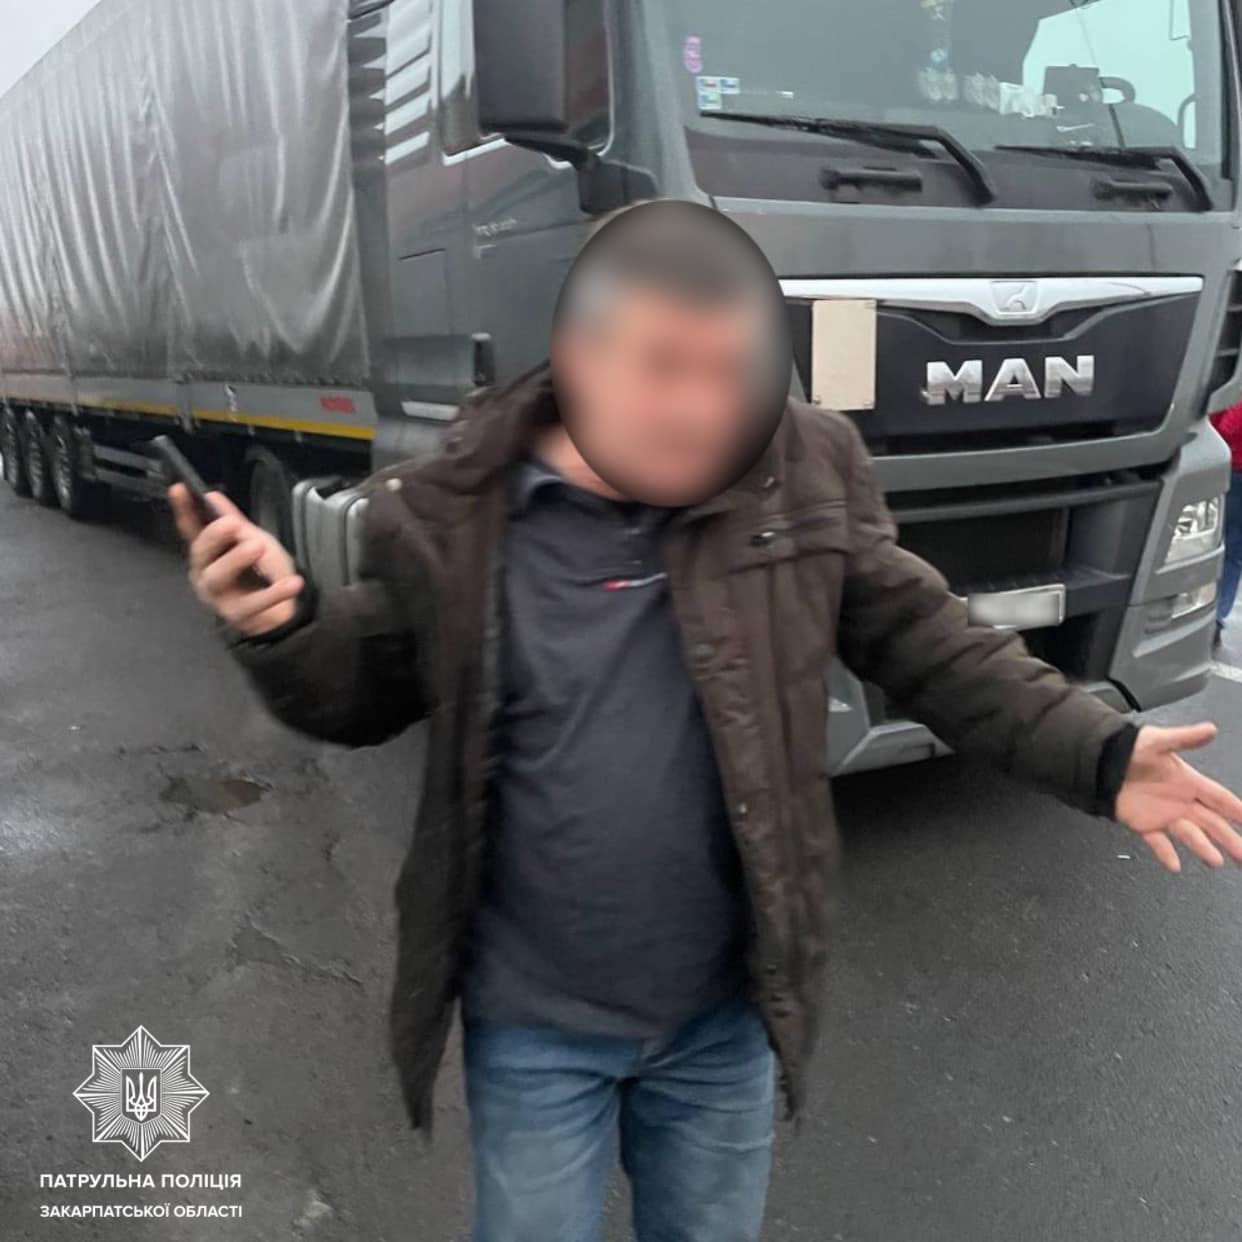 Событие произошло сегодня, около 8:00 .m., на КПП «Тиса». Полиция остановила автомобиль Volvo, водитель которого попытался обойти очередь грузовиков, двигаясь во втором ряду.